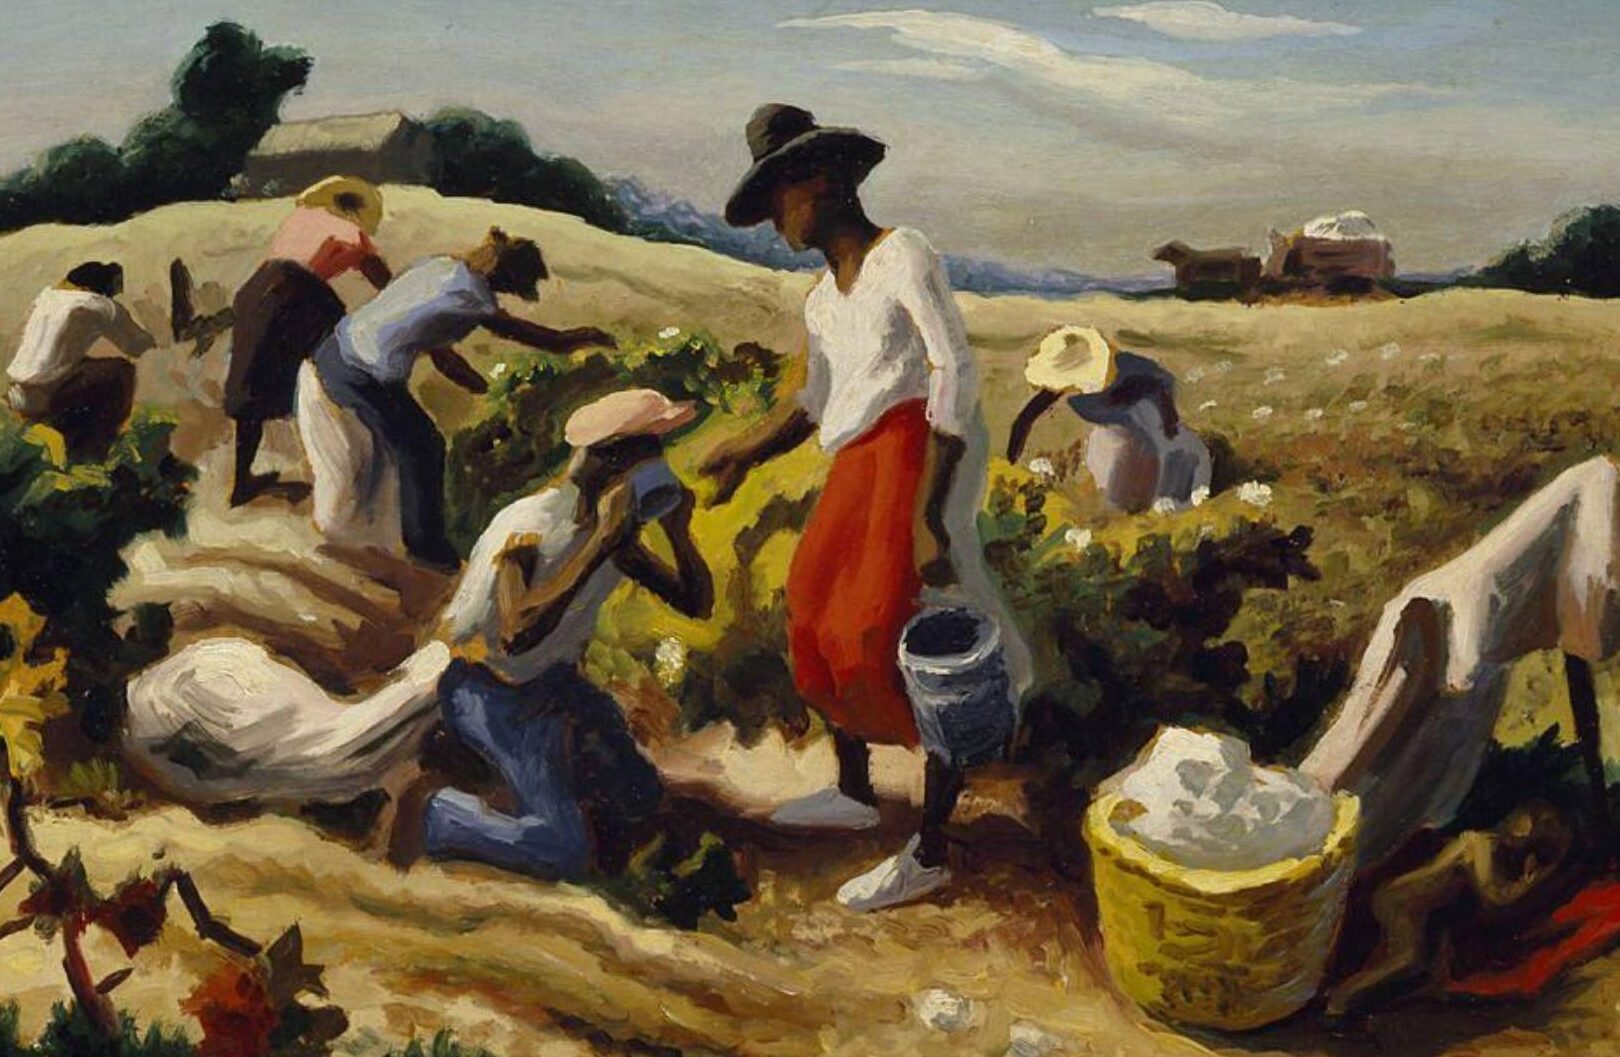 Thomas Hart Benton: Vida y obra del pintor regionalista estadounidense.